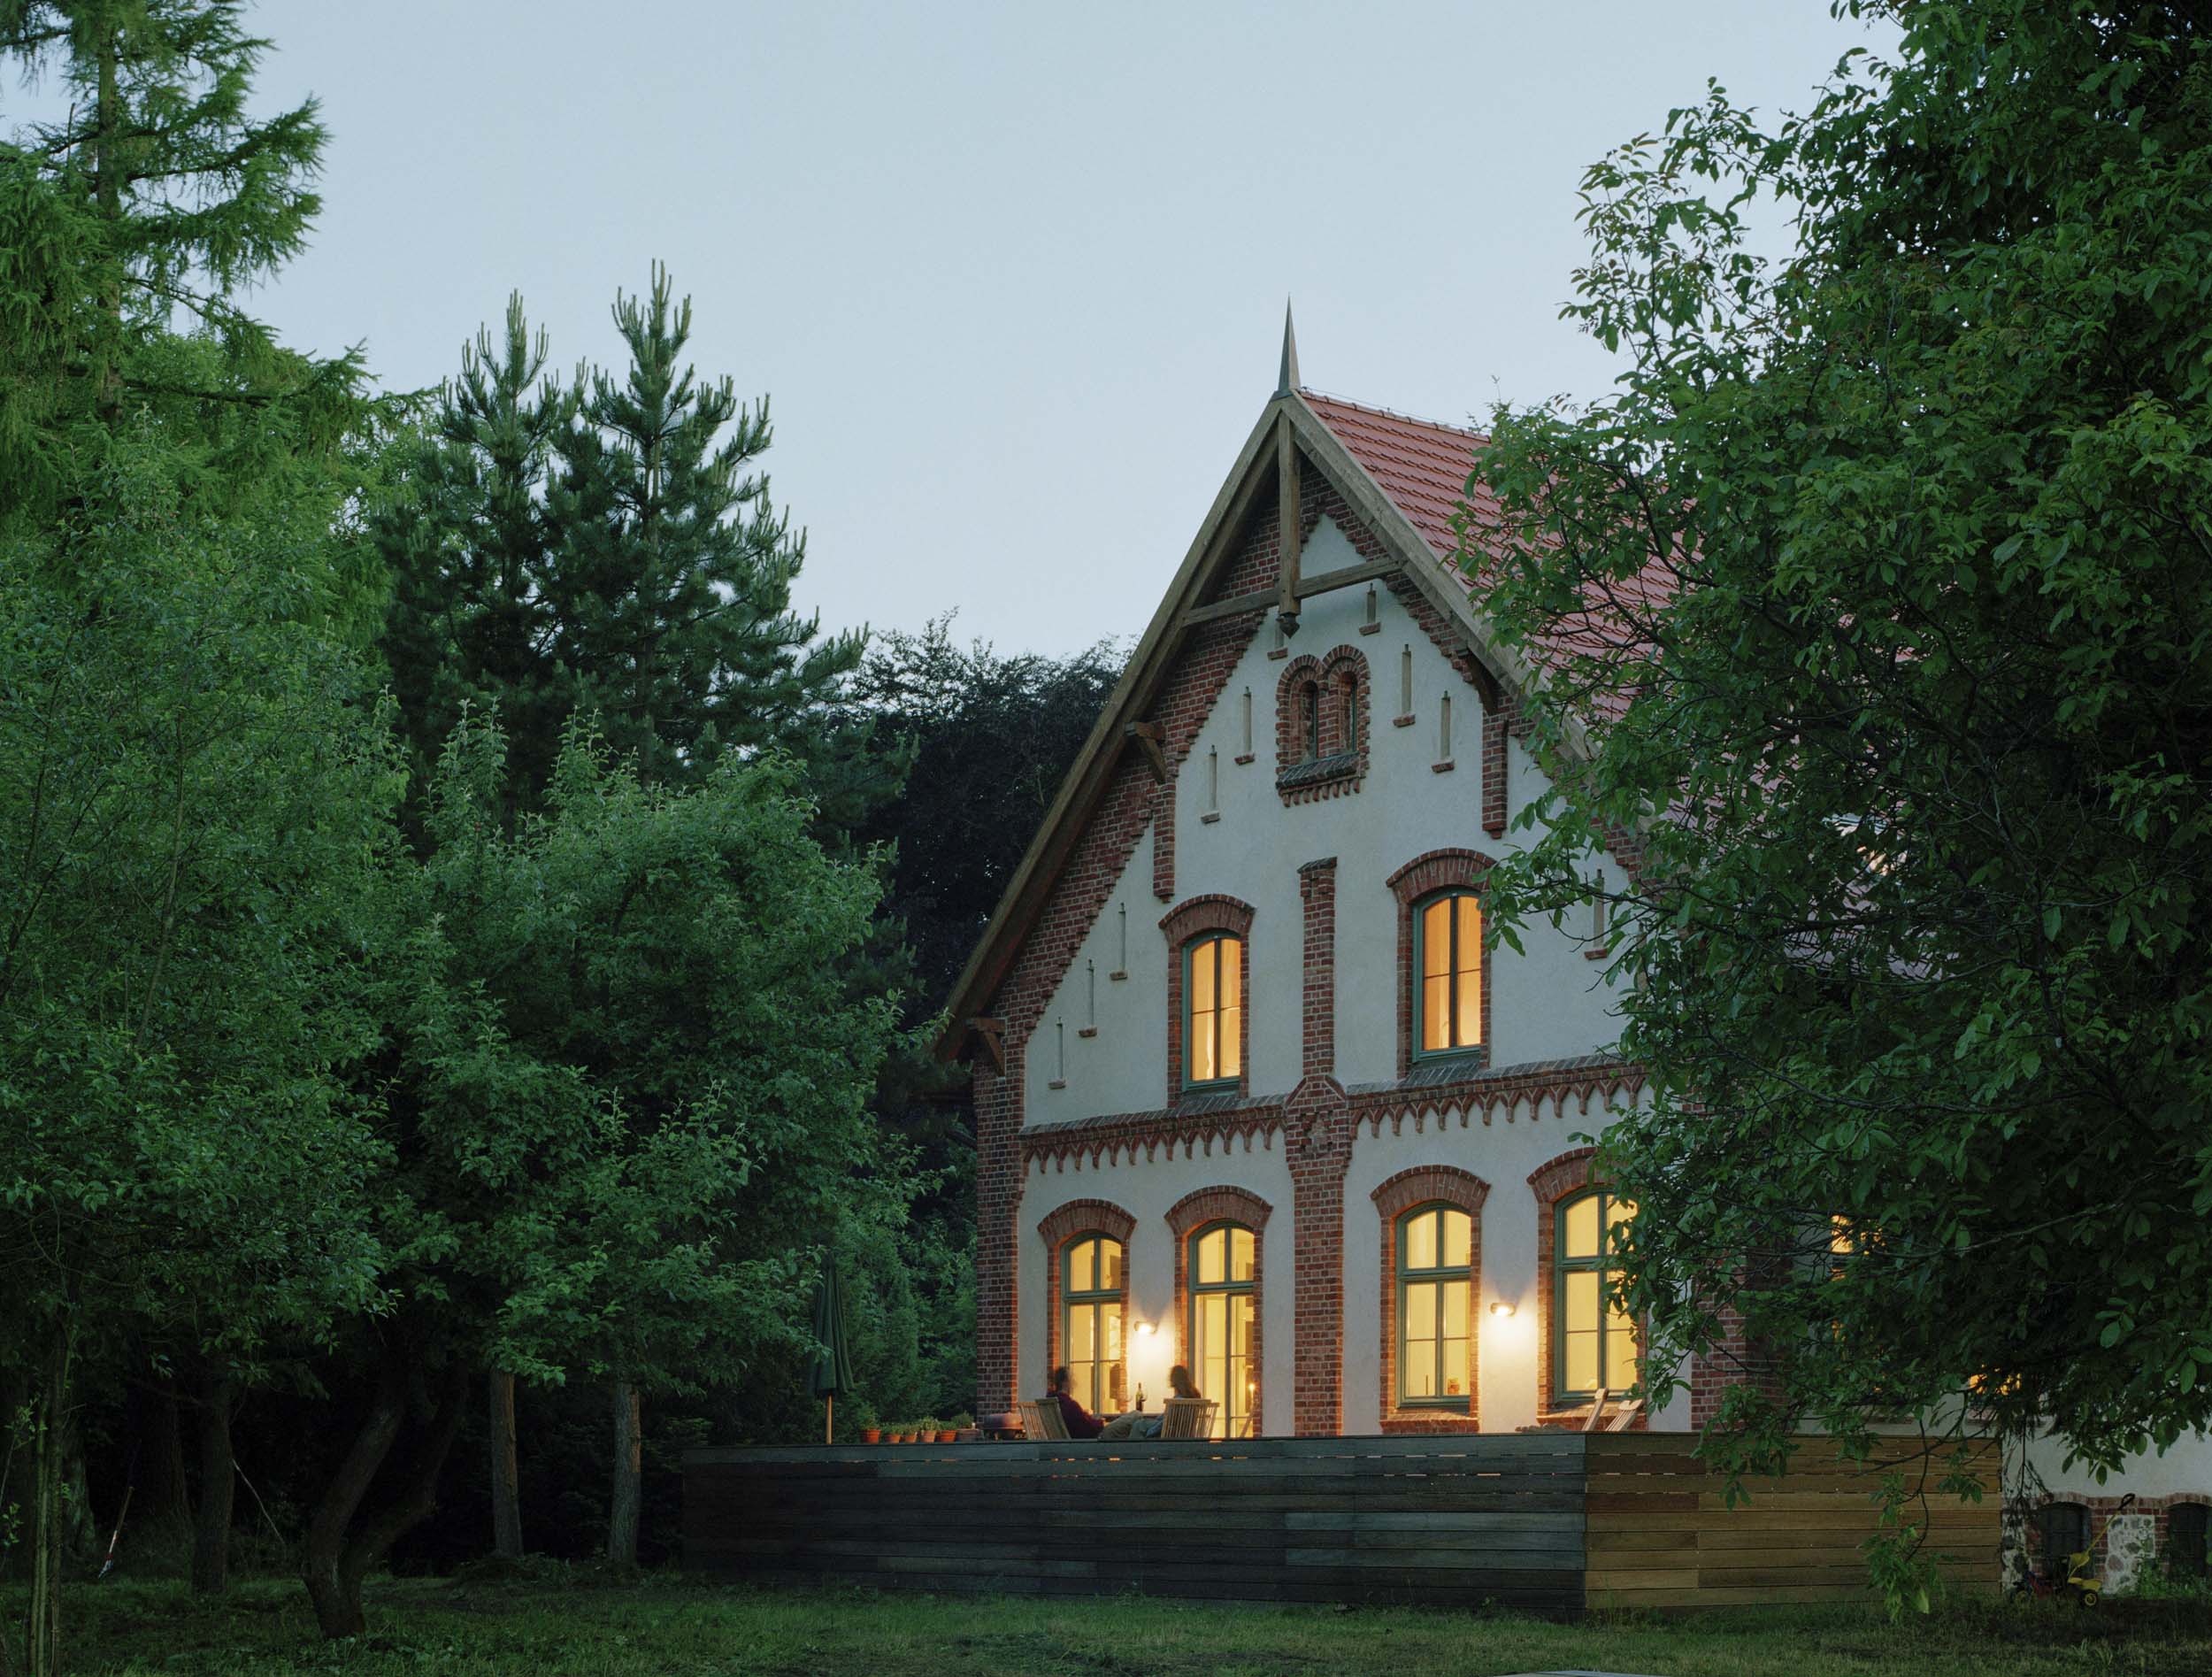 Forsthaus Hirschburg © Werner Huthmacher